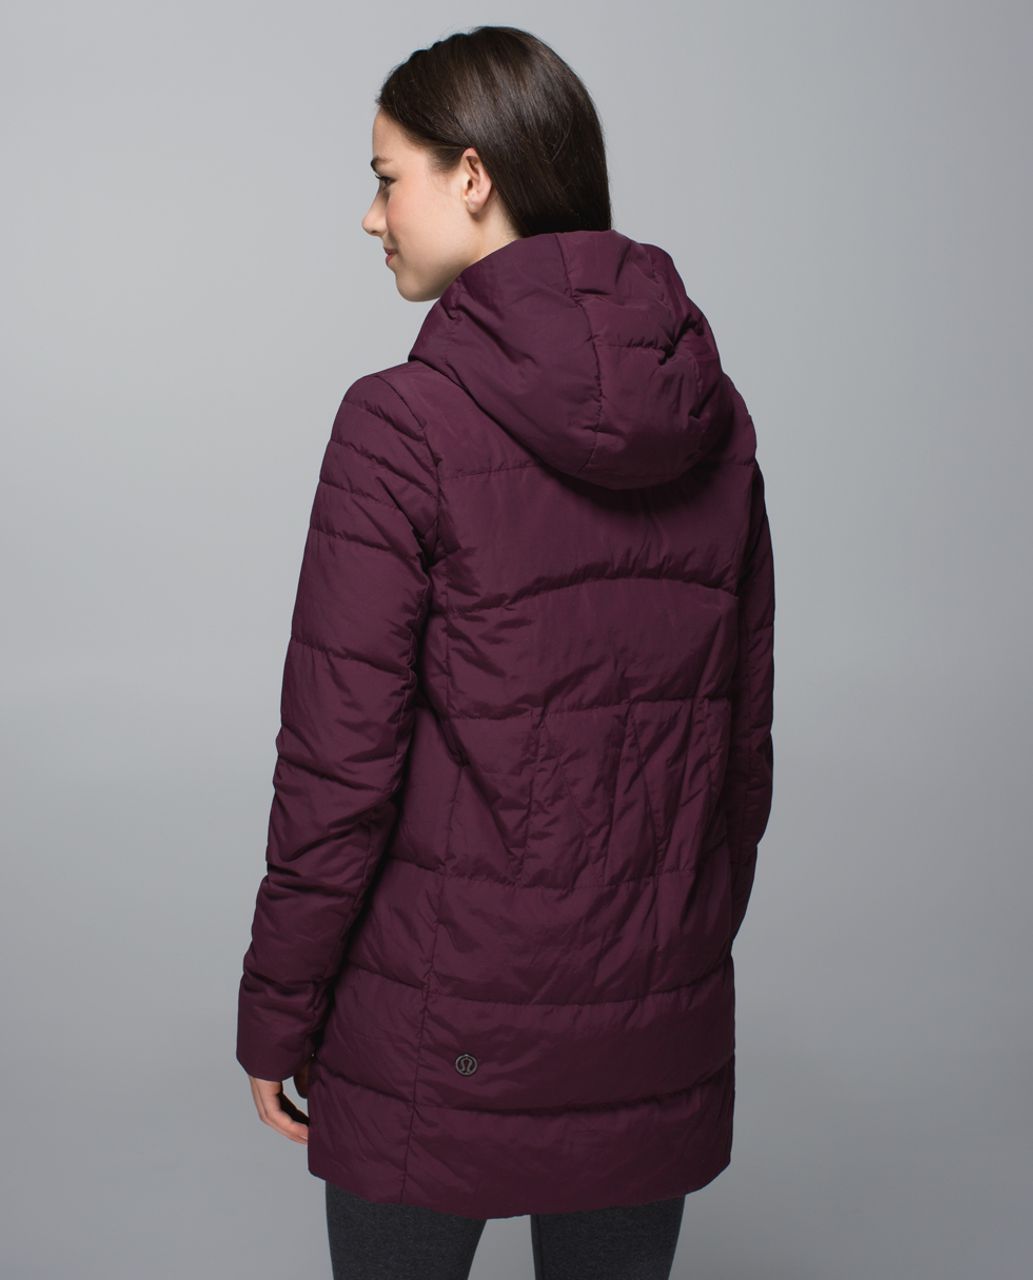 lululemon blanket jacket